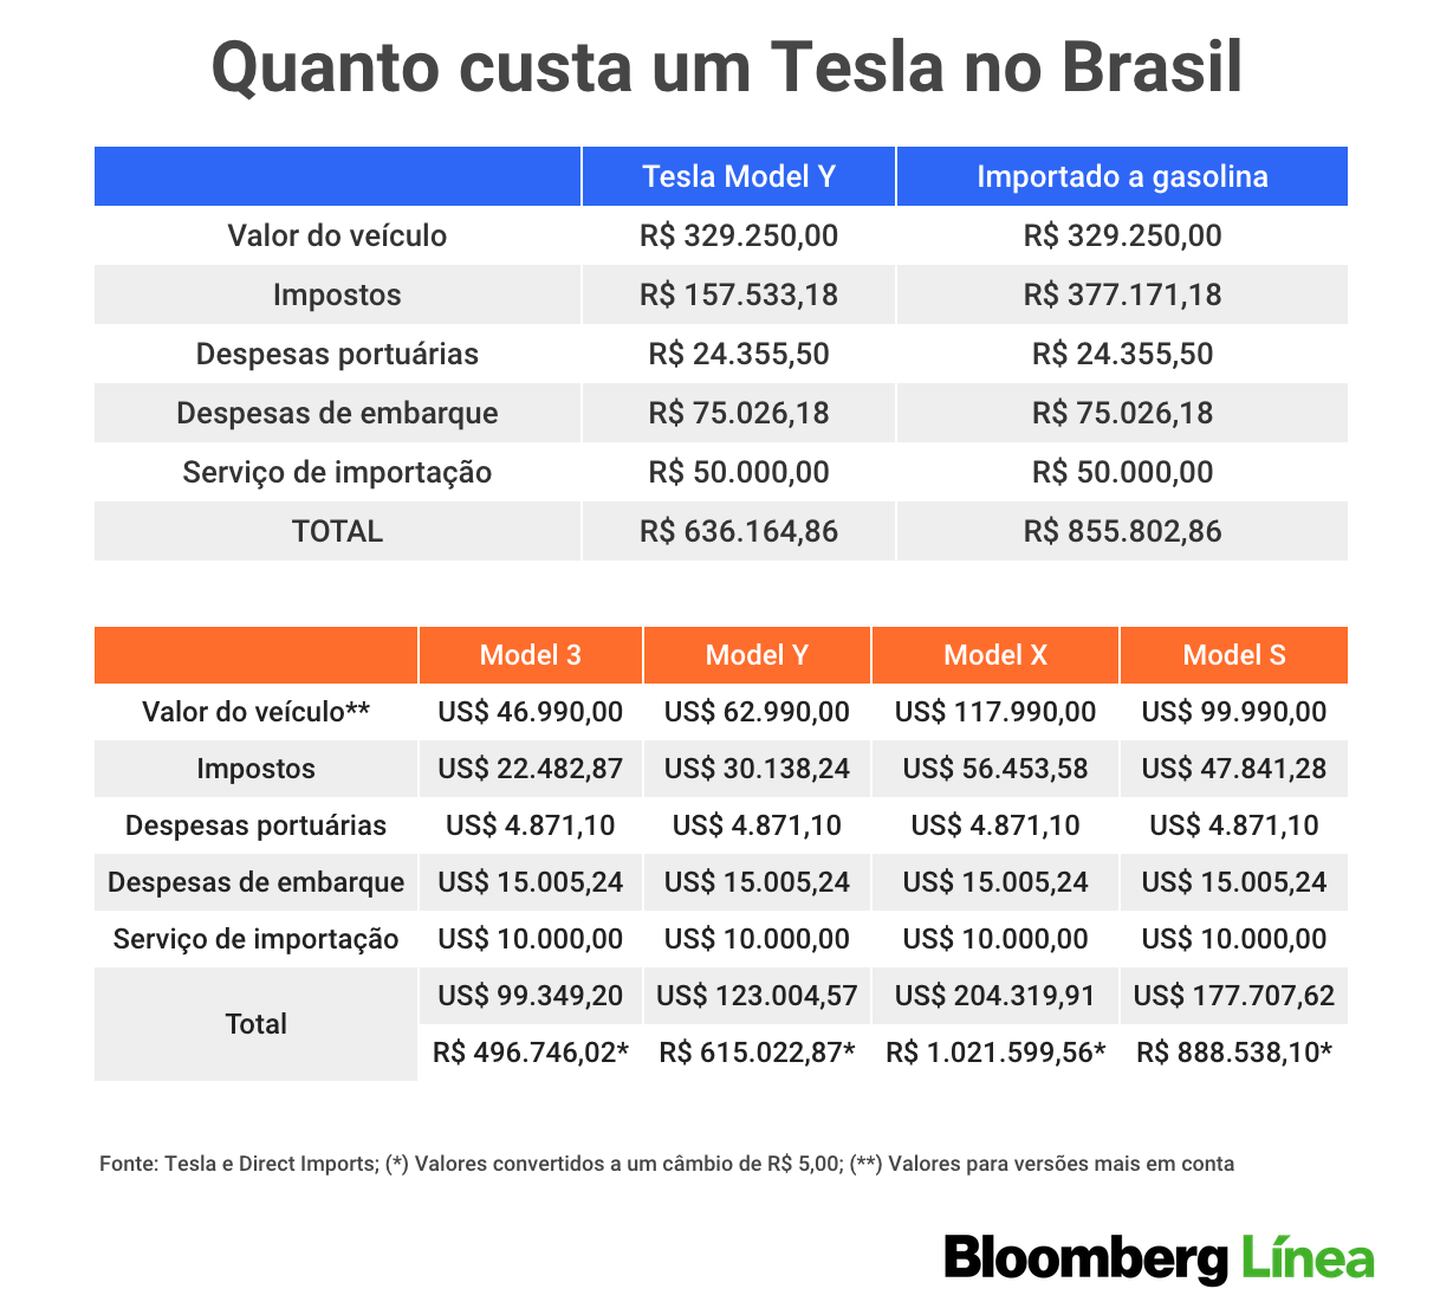 Quanto custam os principais modelos da Tesla no Brasildfd